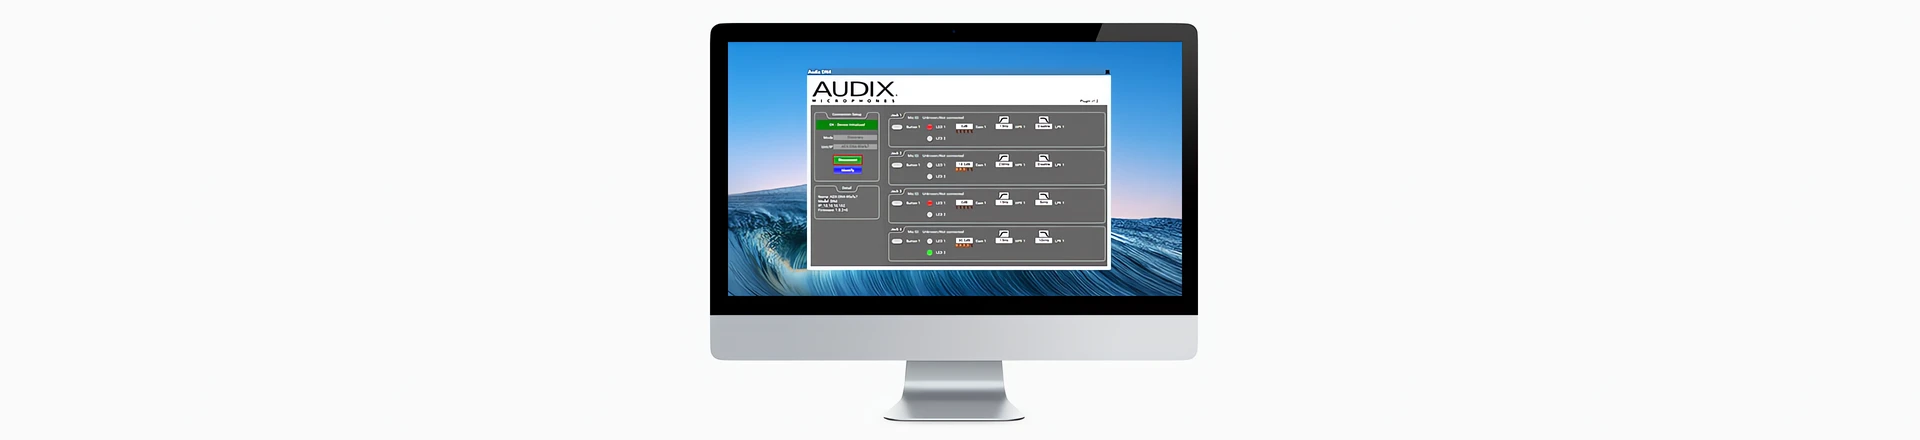 Audix integruje mikrofony instalacyjne z systemem Q-SYS